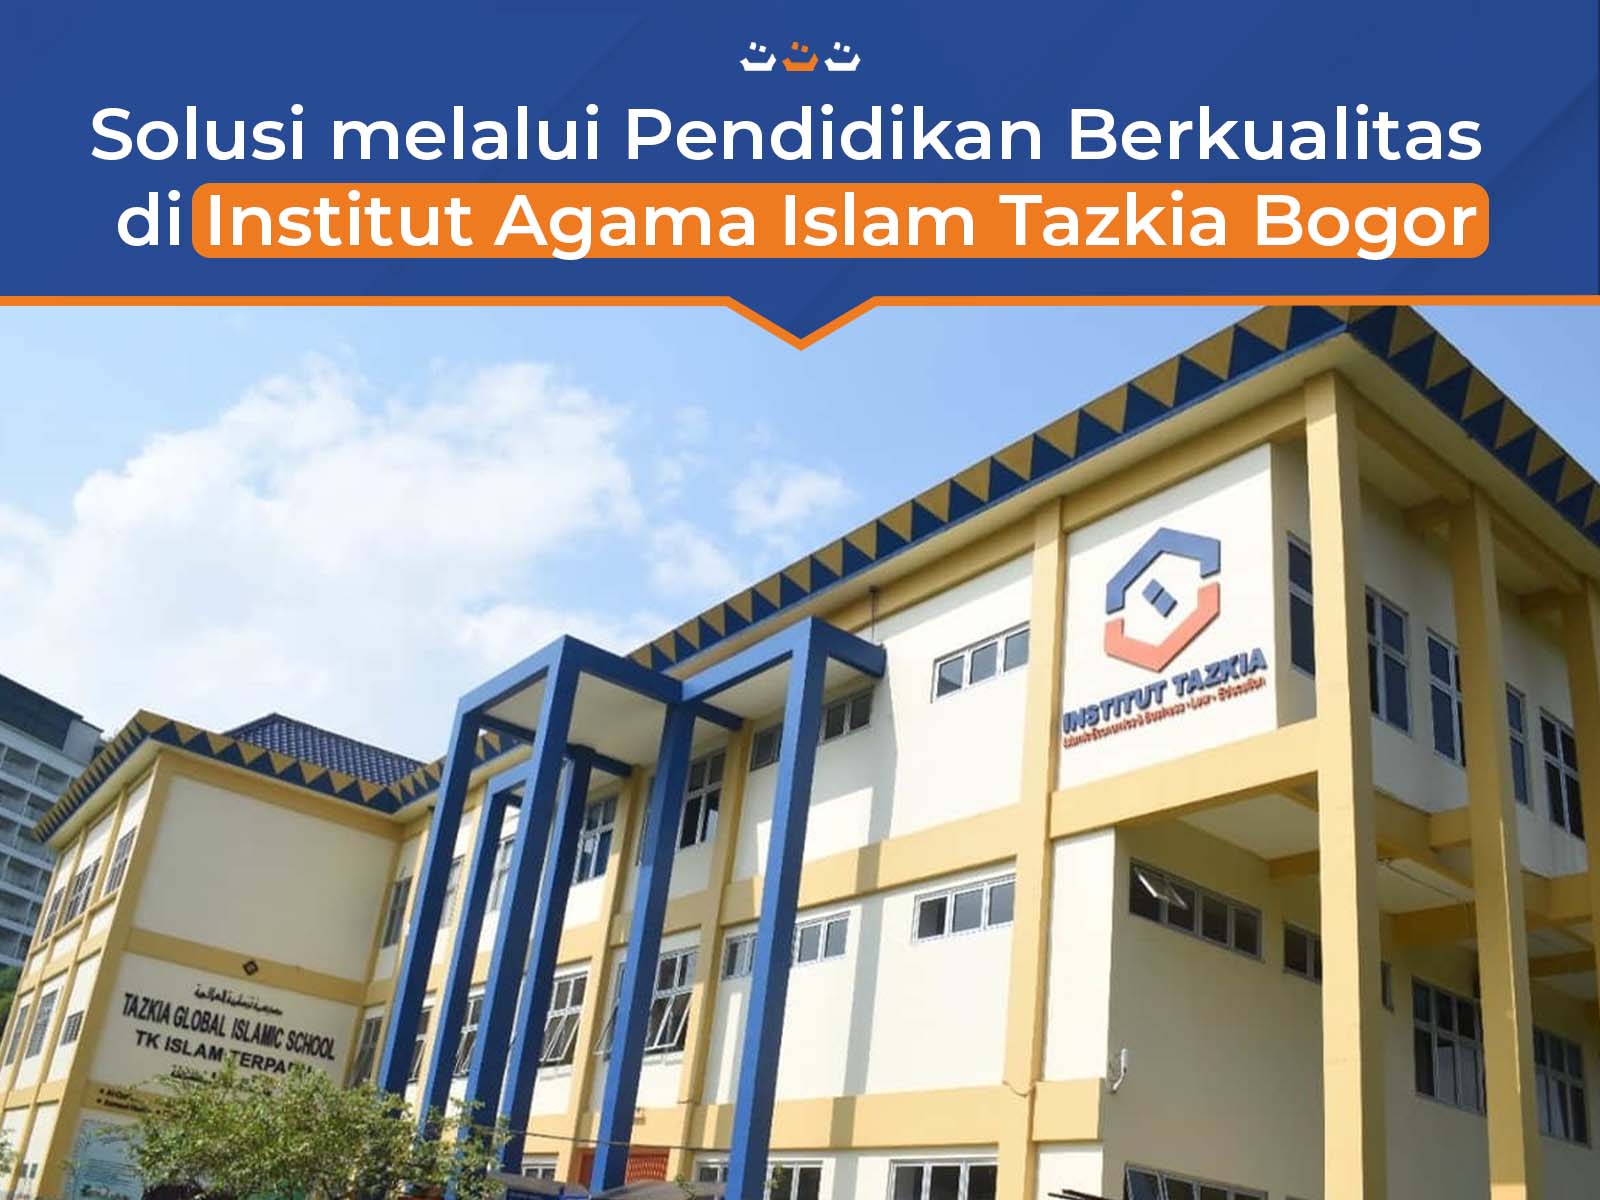 Solusi Meningkatkan Pendidikan Berkualitas di Institut Agama Islam Tazkia Bogor